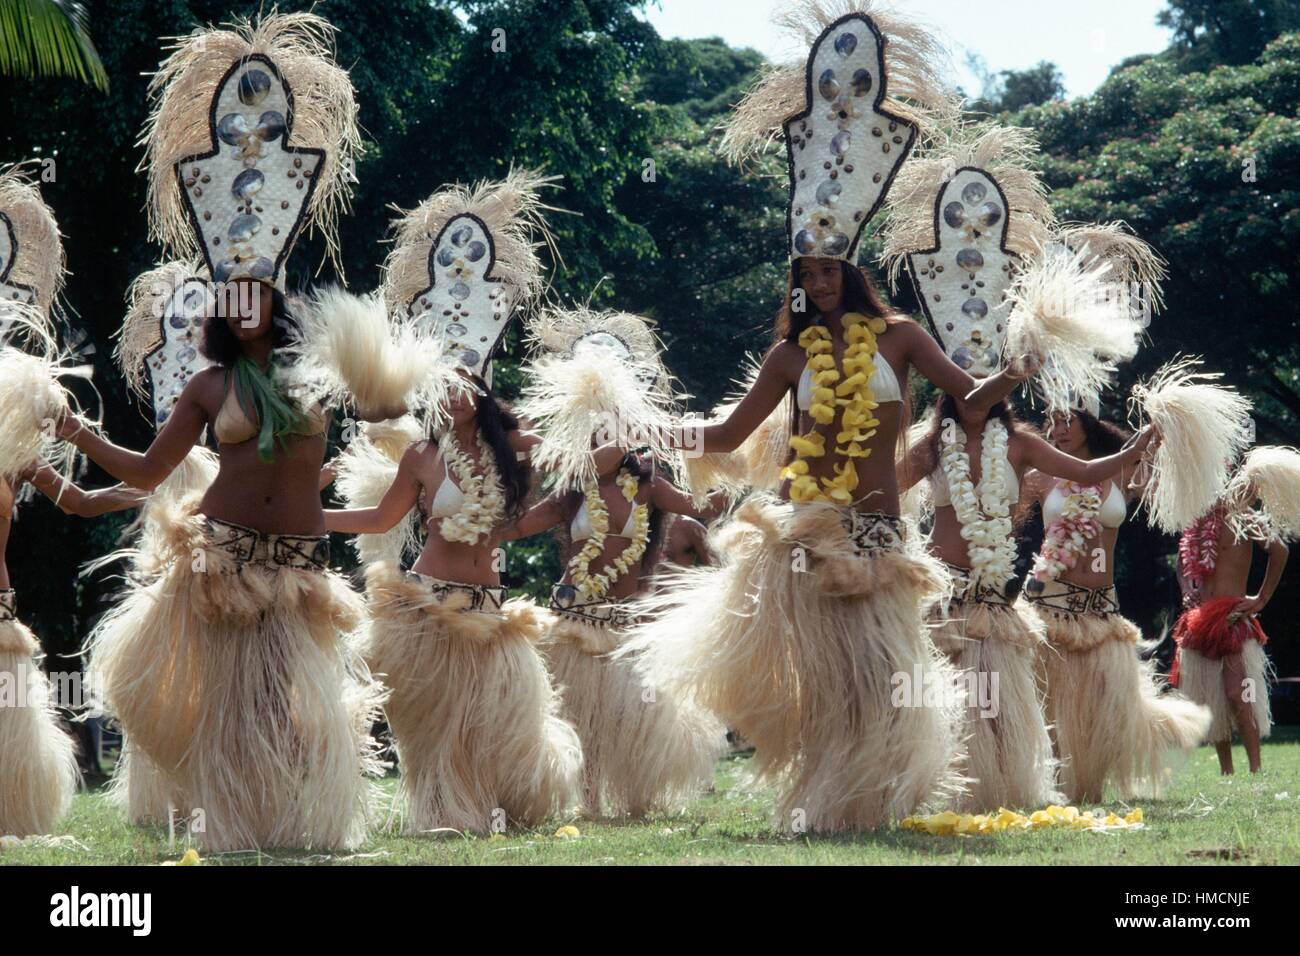 Tamure Bailarines en trajes típicos, Tahiti, islas de la sociedad, el archipiélago de las islas de Barlovento, Polinesia Francesa Foto de stock